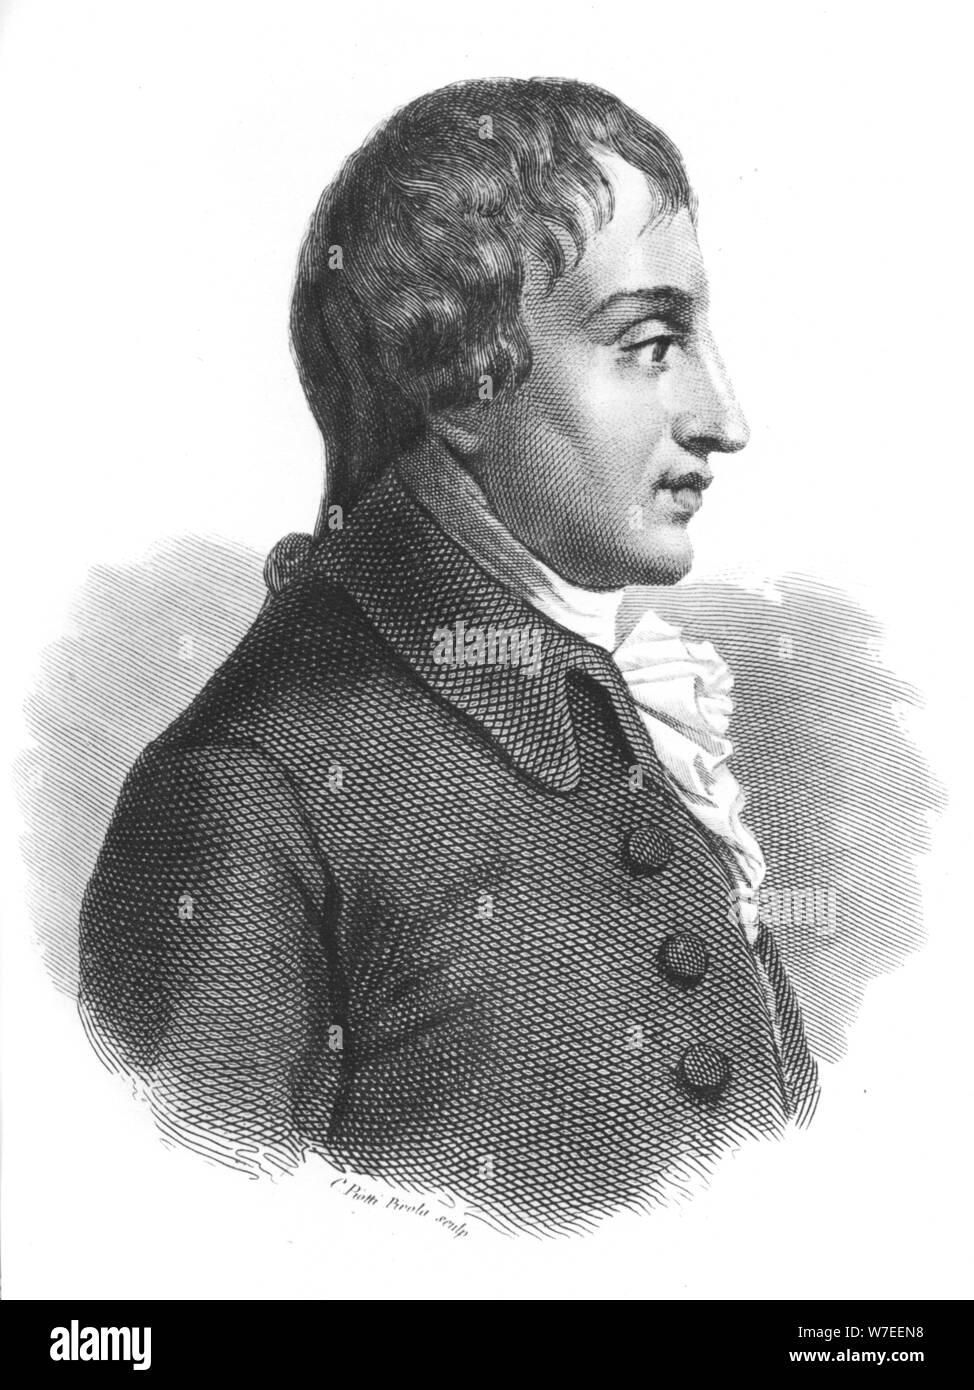 Giovanni Battista Pergolesi (.) war ein italienischer Komponist, Violinist und Organist. Artist: P Pirola Stockfoto